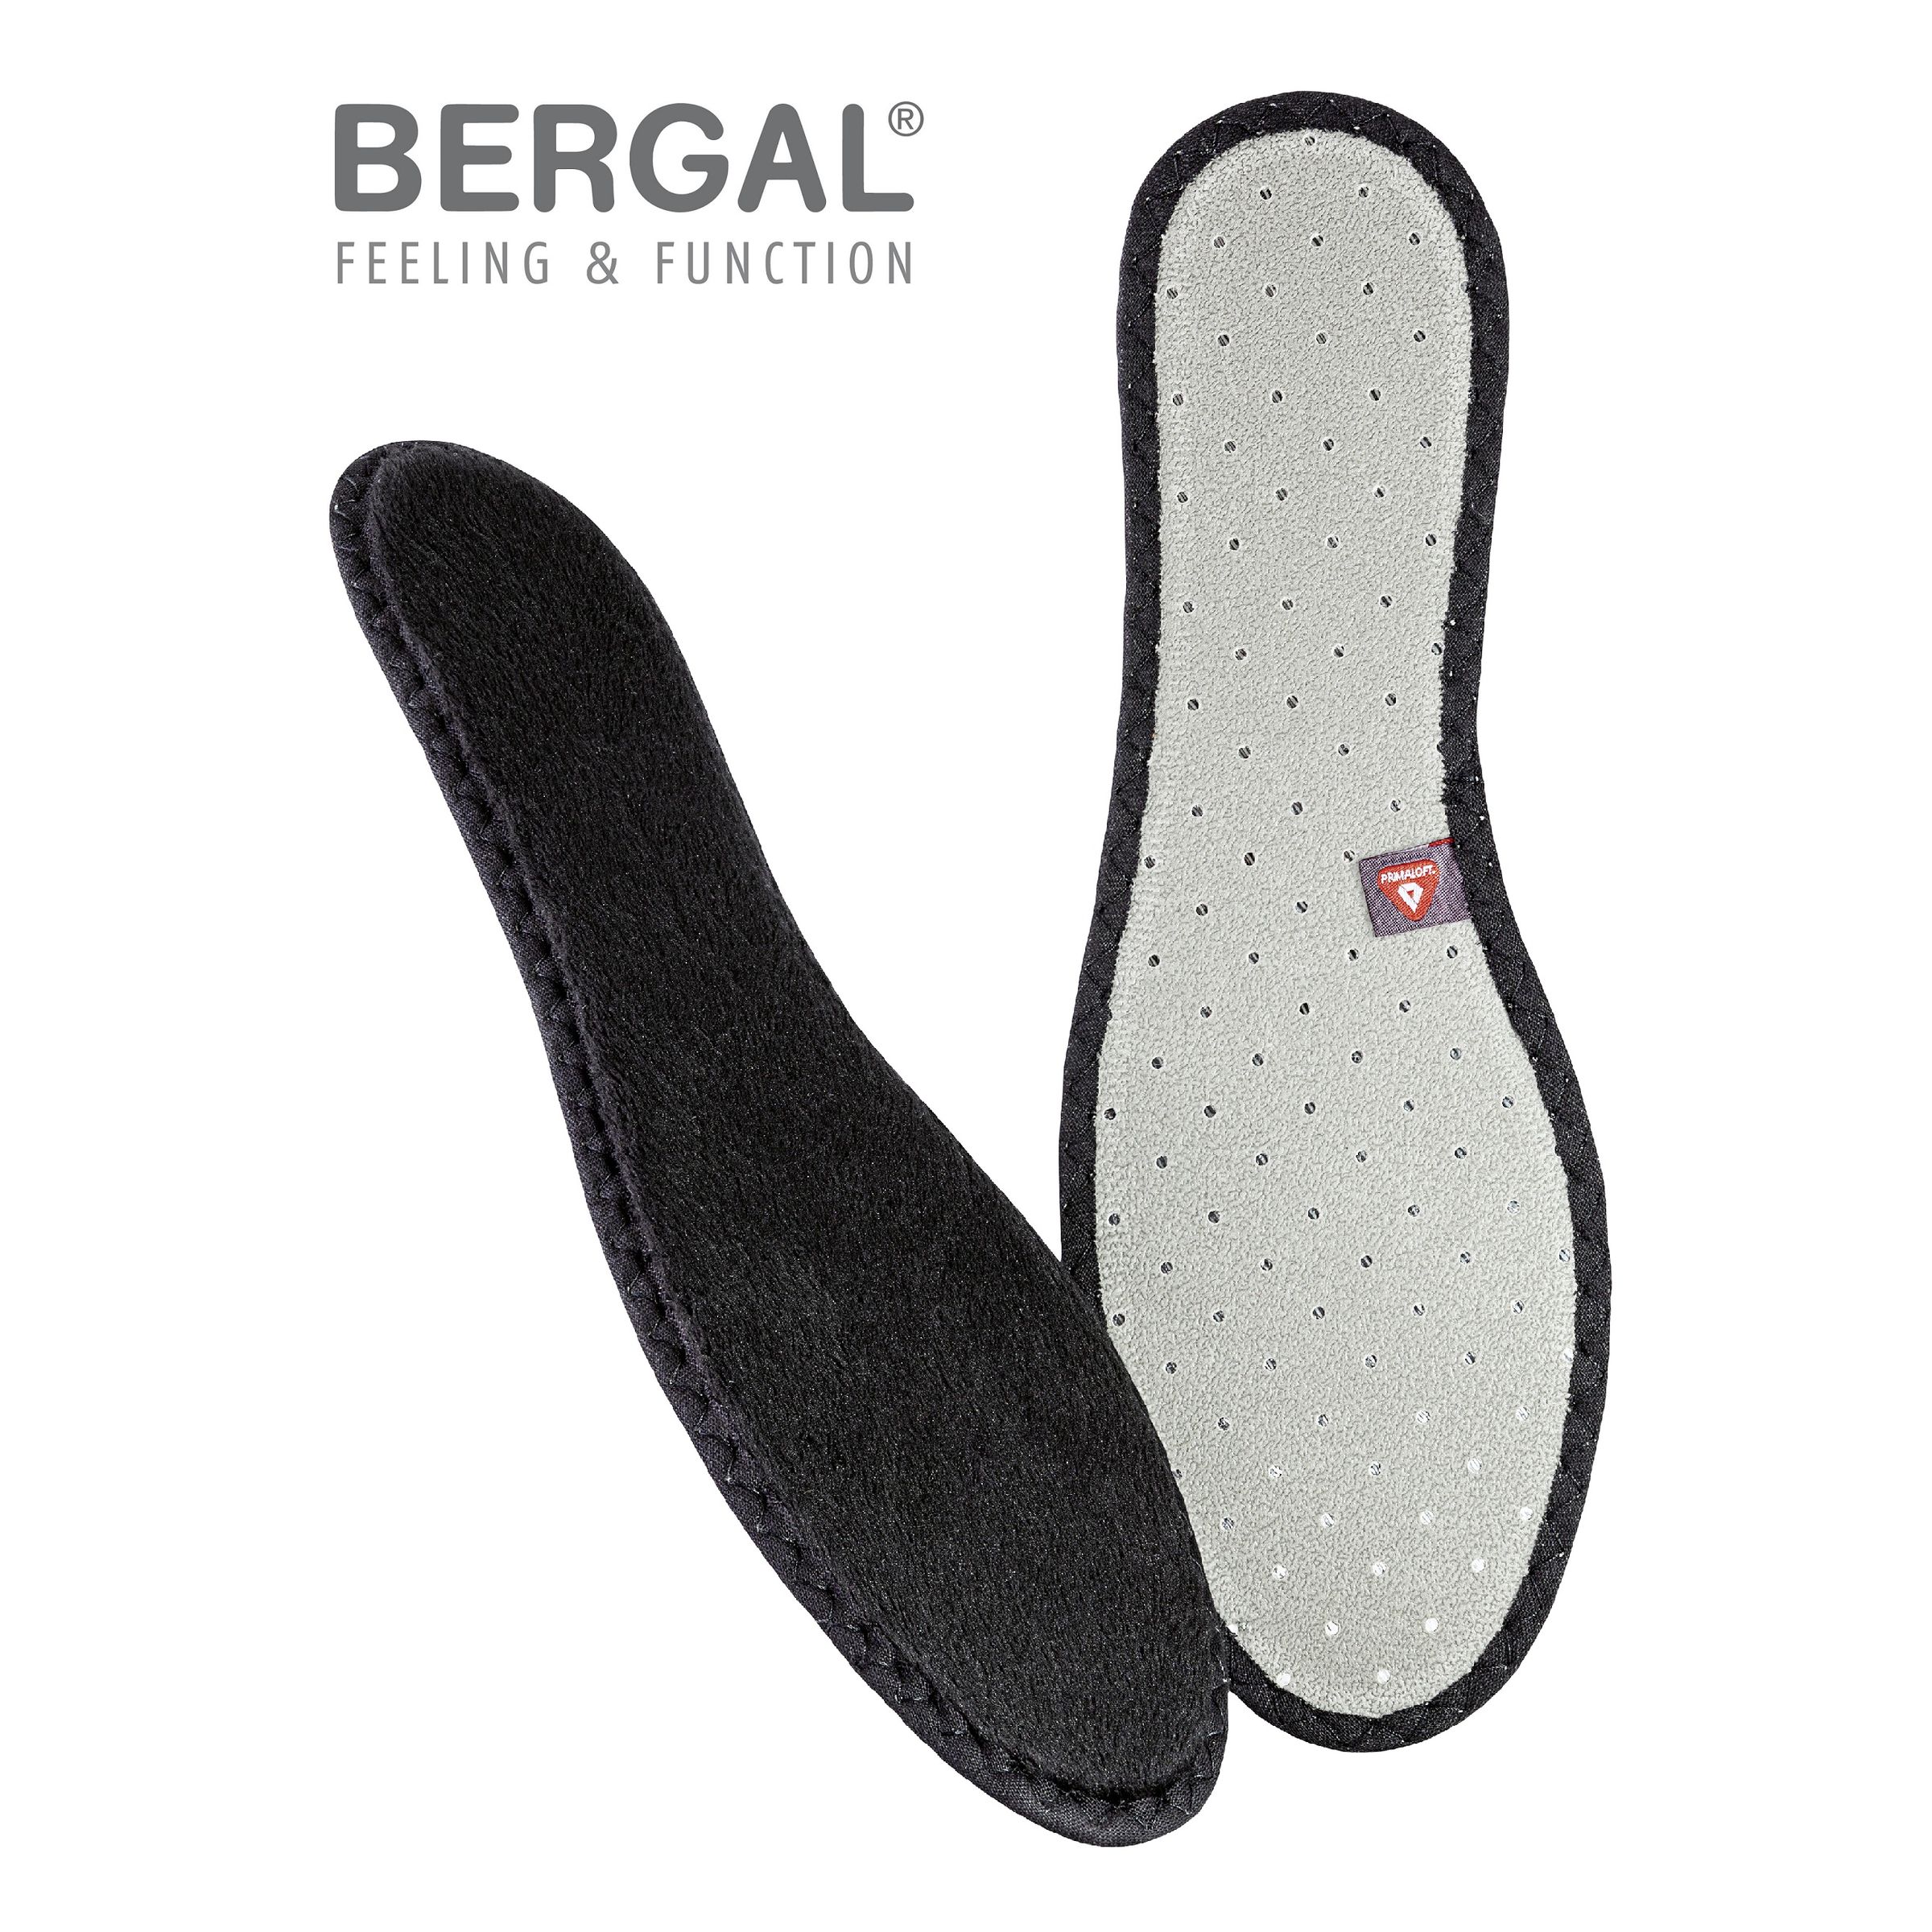 Bergal 1 Paar Thermo Soft wärmende Winter Schuh-Einlage, Einlegesohle mit High-Tech-Funktionsfaser PrimaLoft 